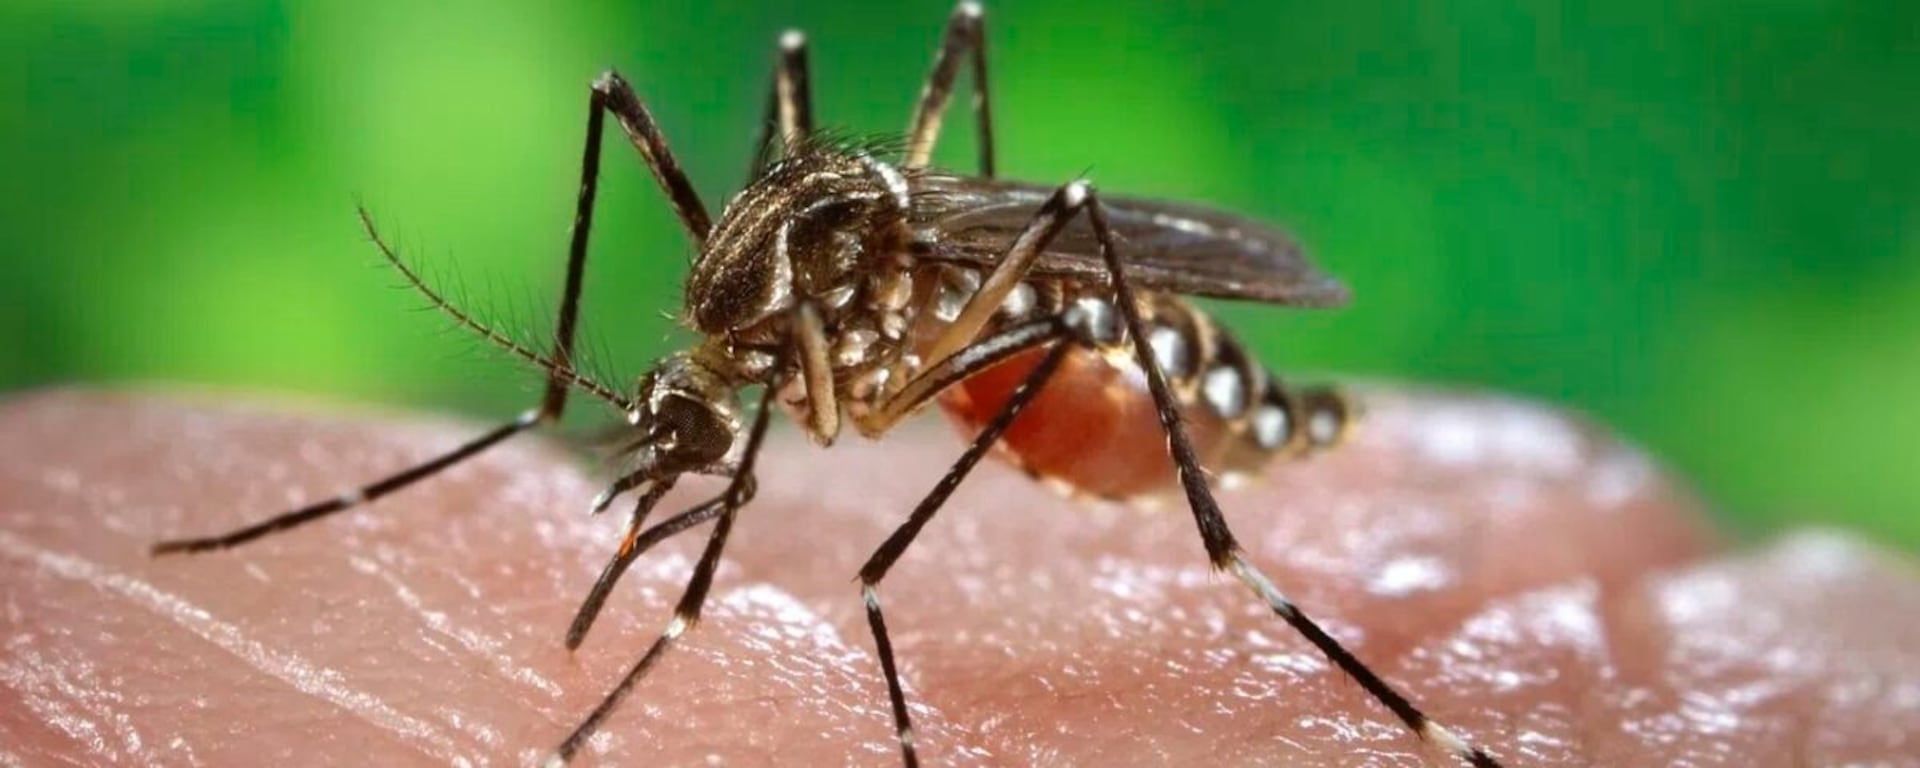 Dengue en el Perú | En una semana se ha reportado la muerte de 17 personas y más de 15 mil infectados: ¿Cómo se explica este incremento de casos?